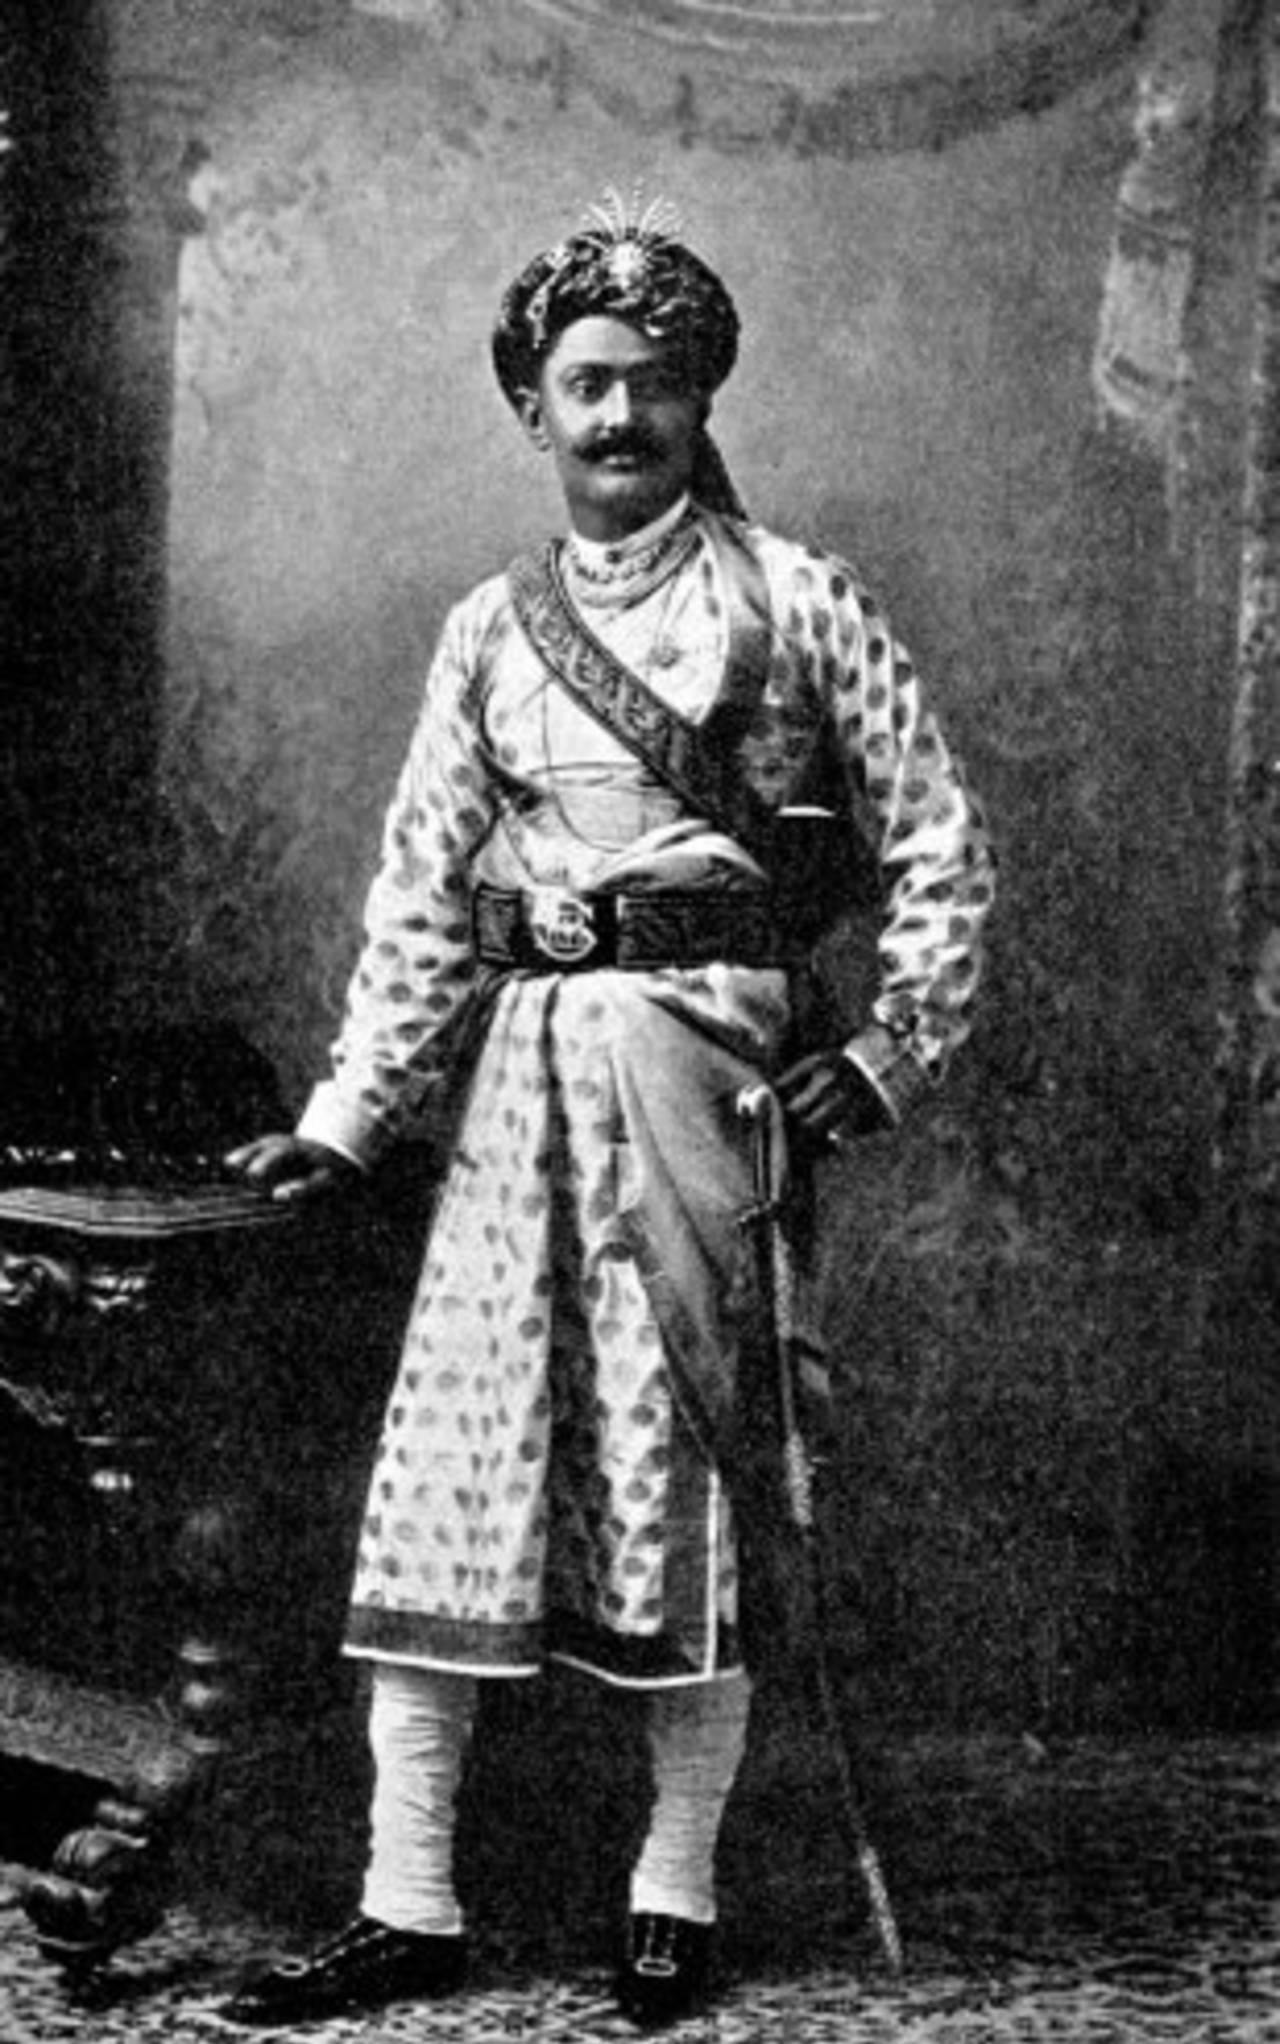 Ranji in his traditional royal dress, May 1, 1902